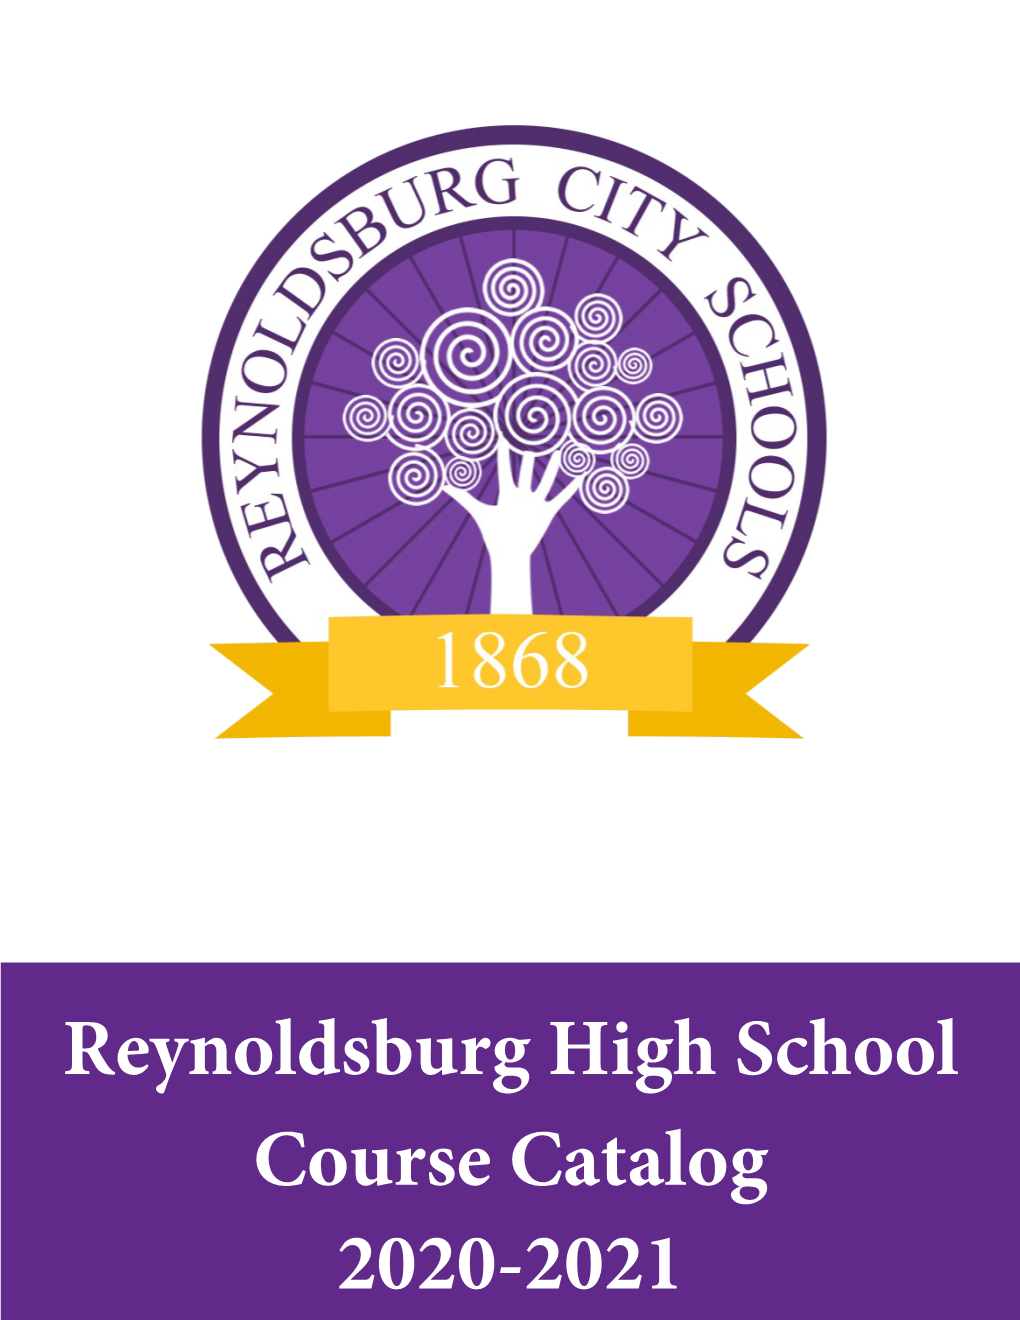 Reynoldsburg High School Course Catalog 2020-2021